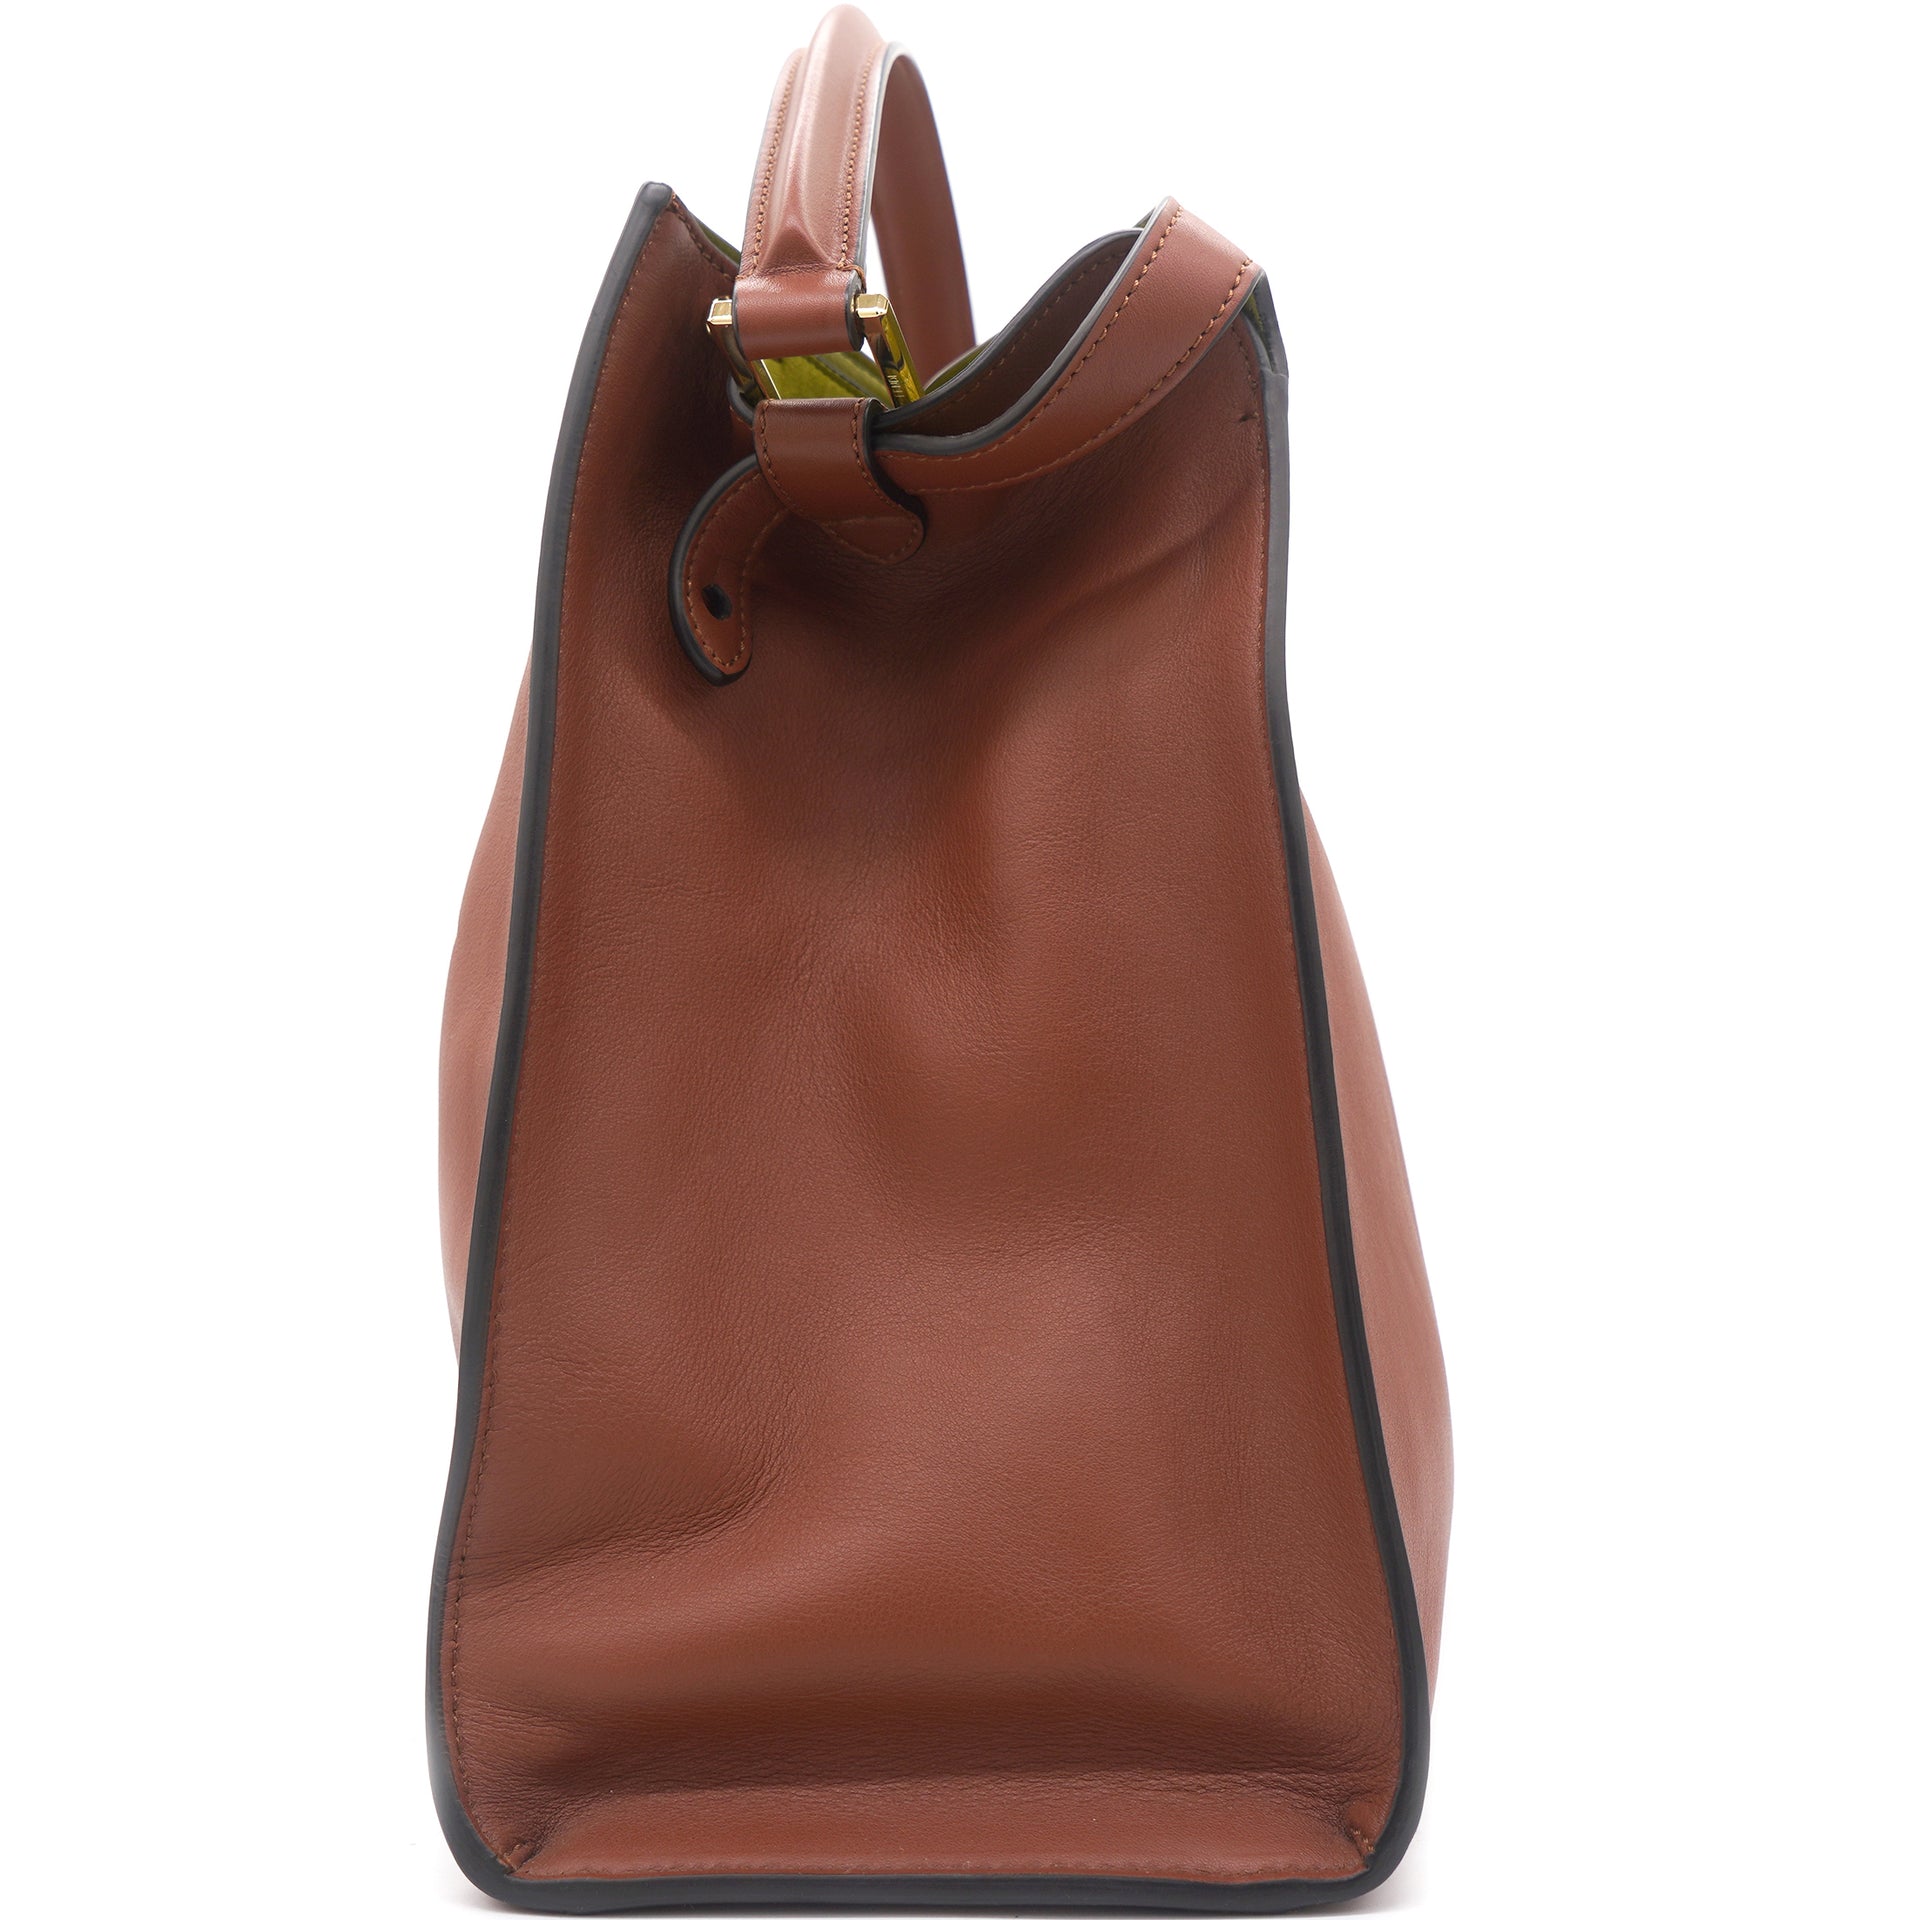 Meudium Peekaboo Iconic Handbag Brown